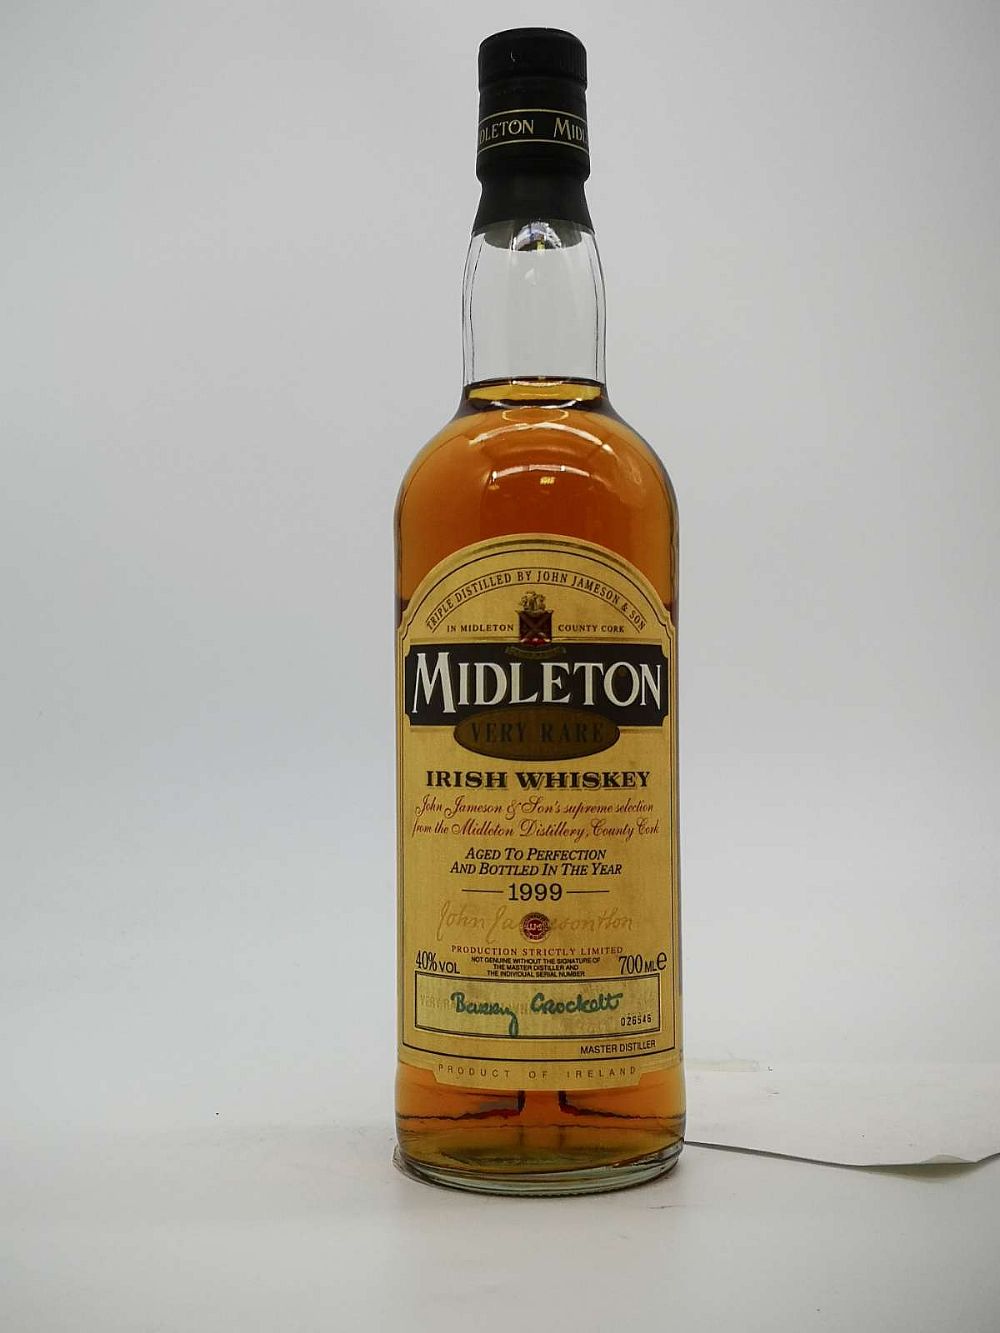 Midleton Very Rare 1999 70cl